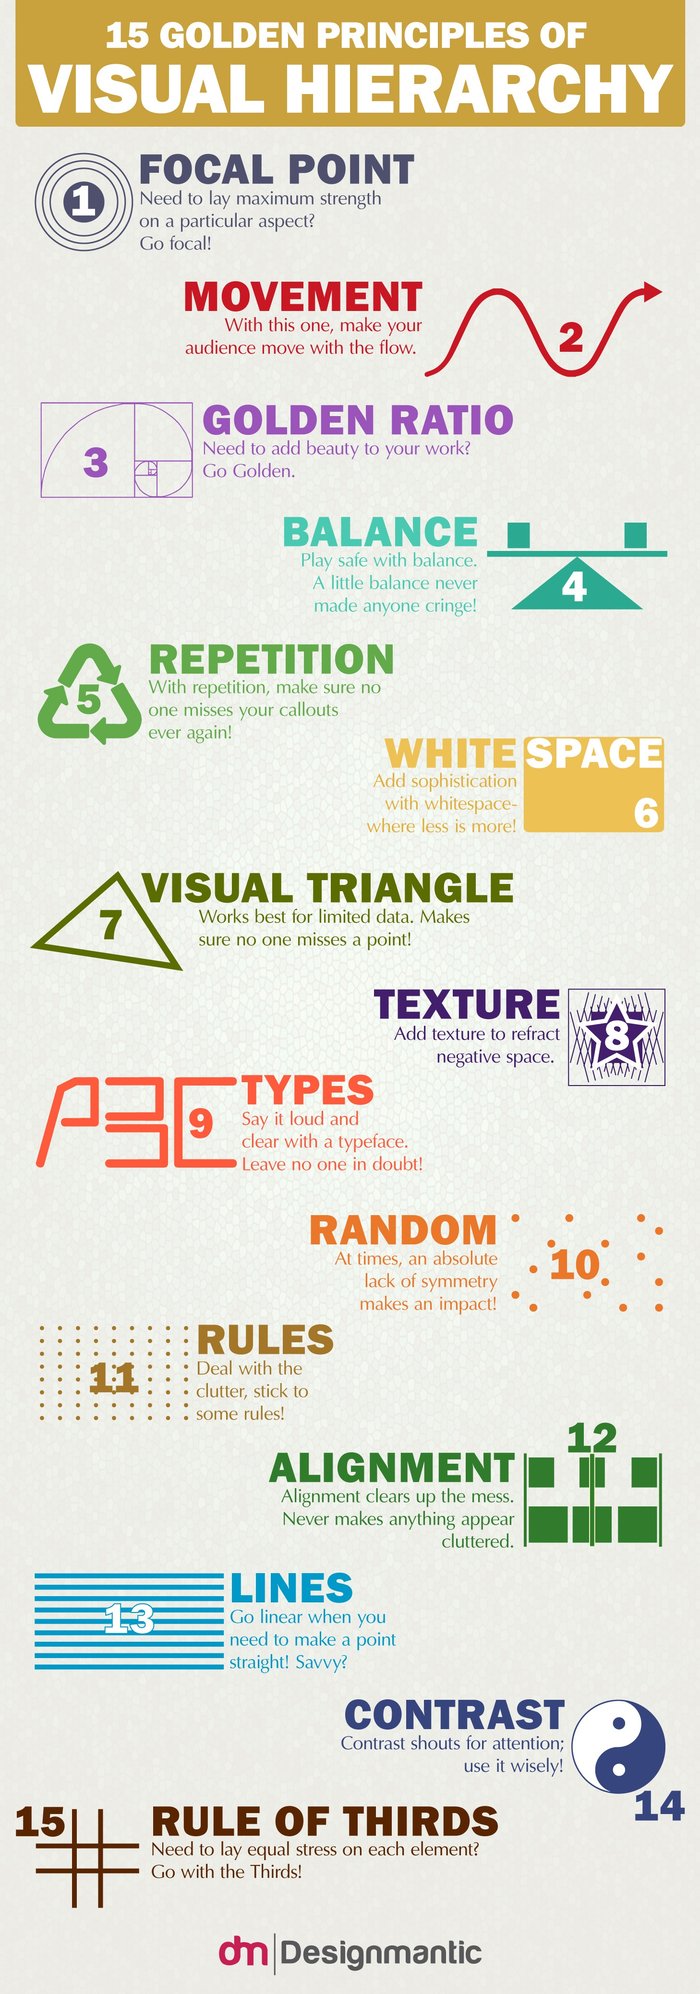 principles of visual hierarchy web design